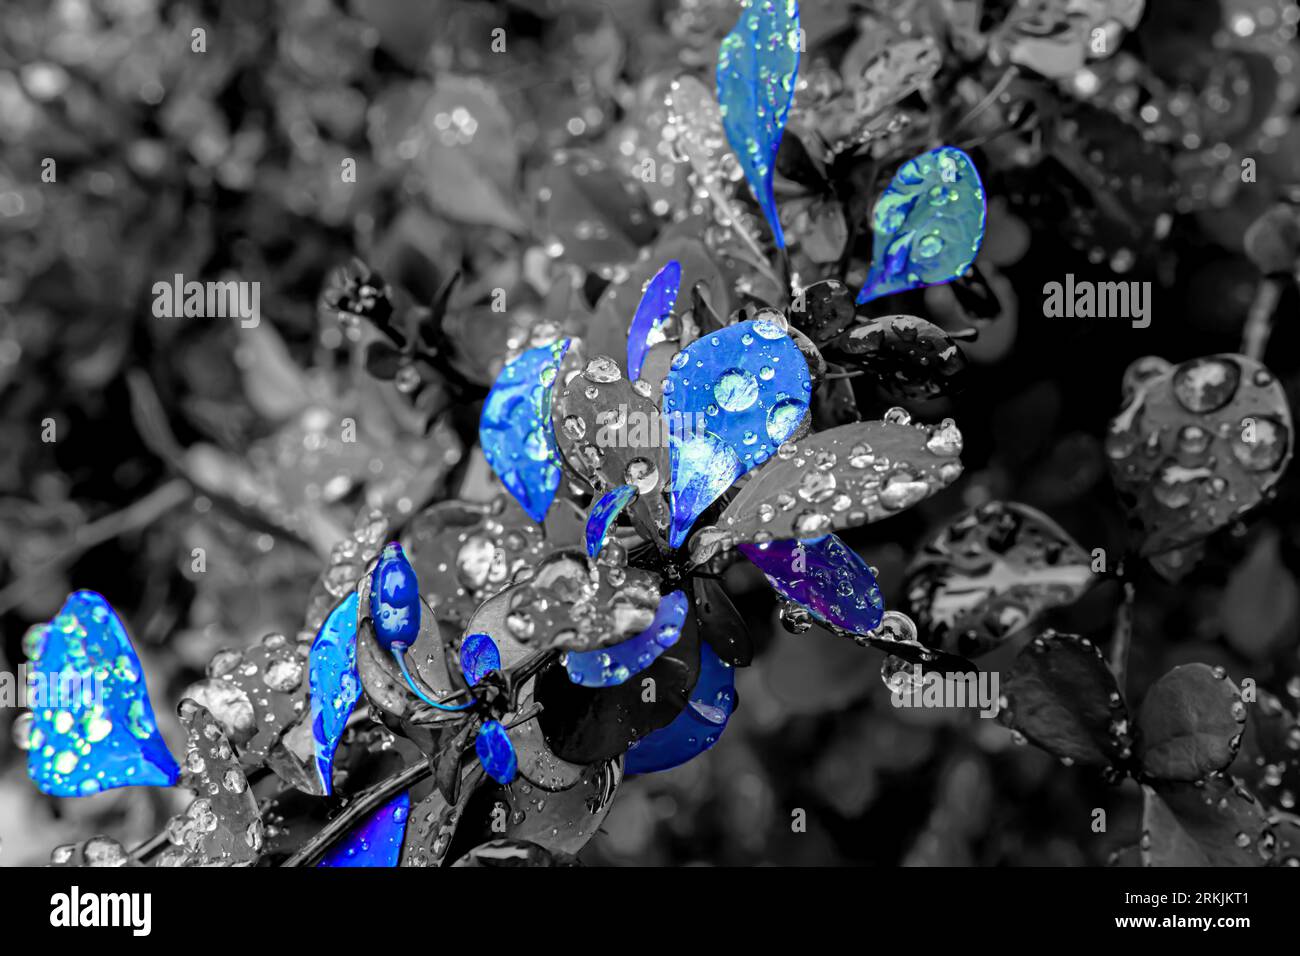 Buisson de baies en noir et blanc avec des taches bleues Banque D'Images